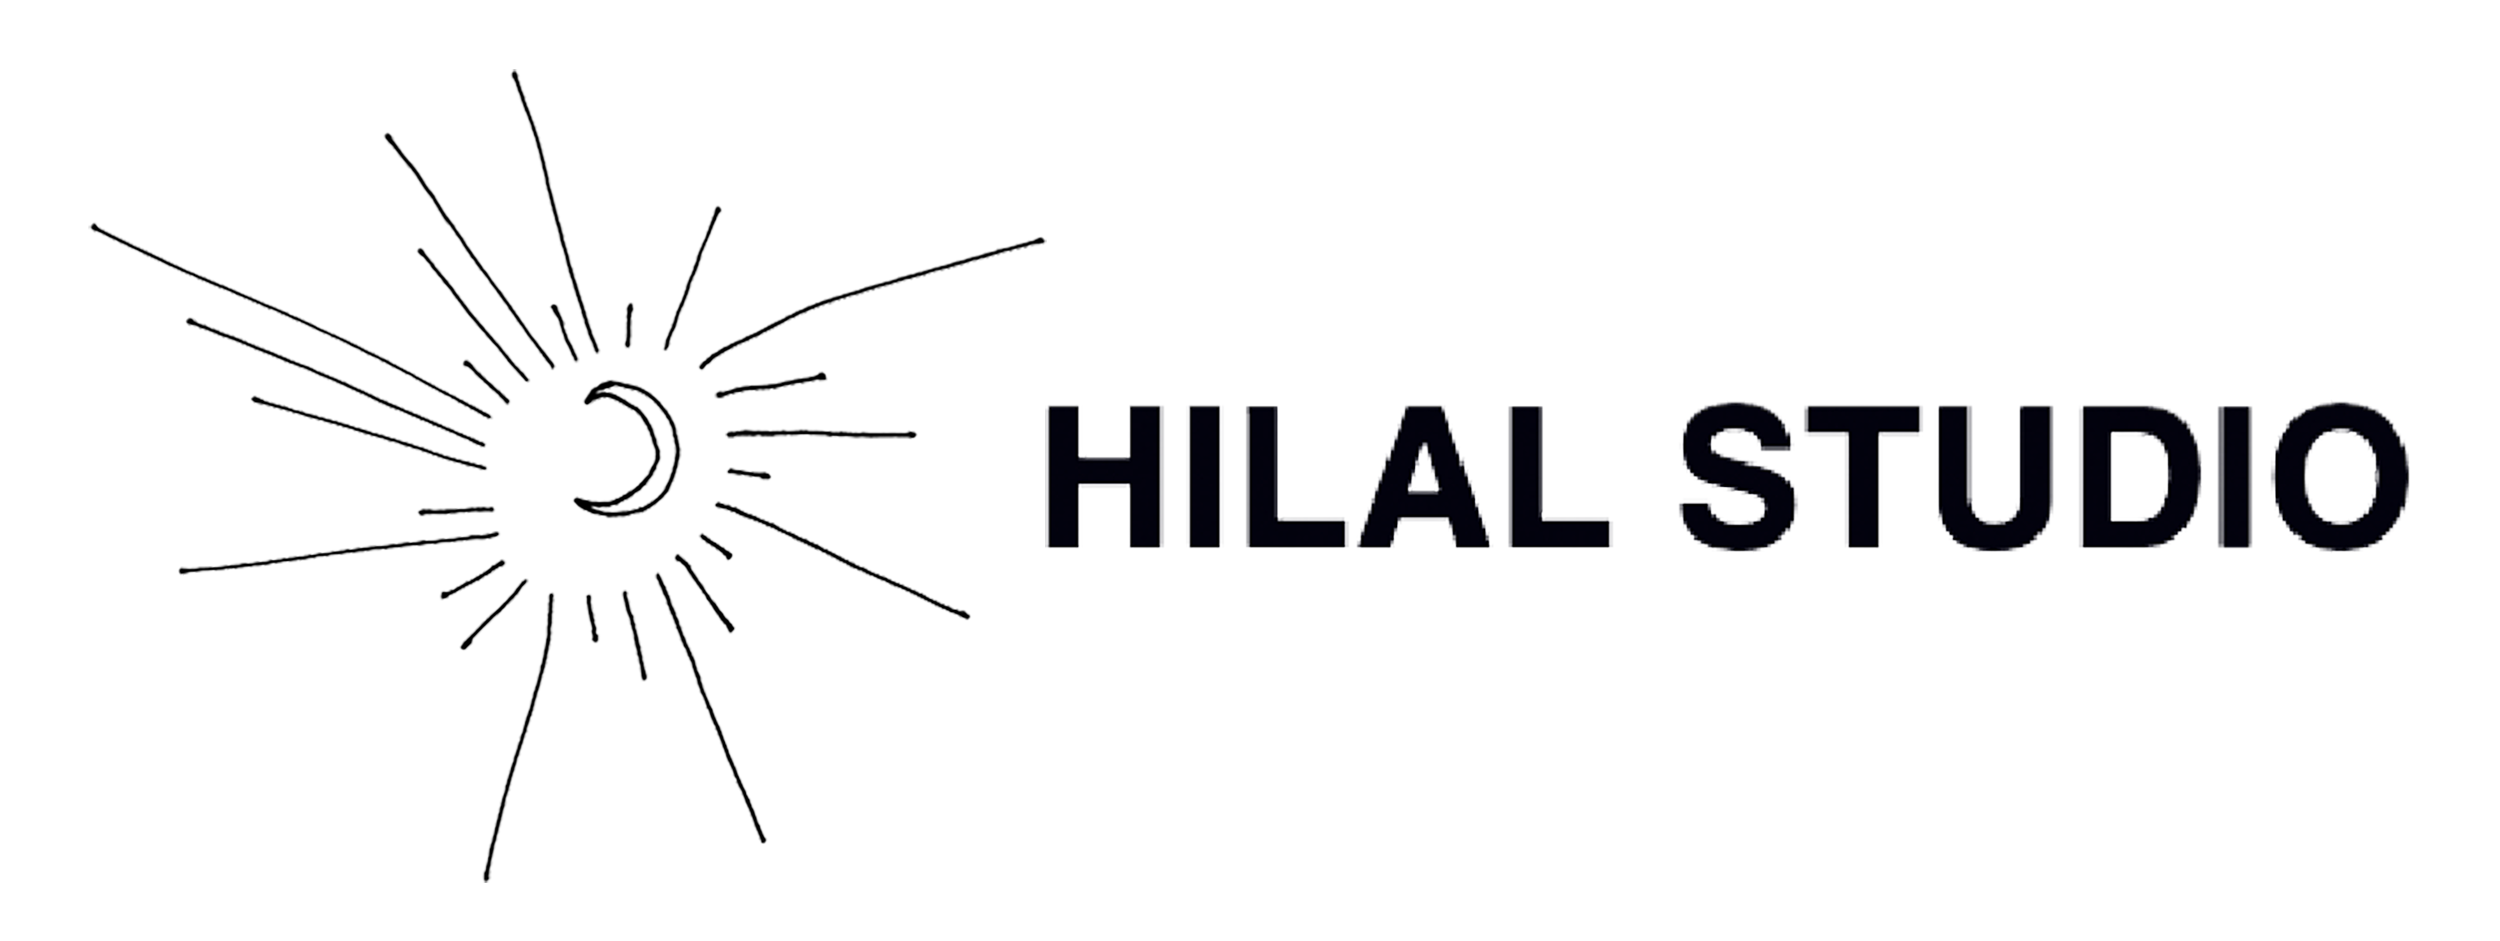 Hilal-studio 